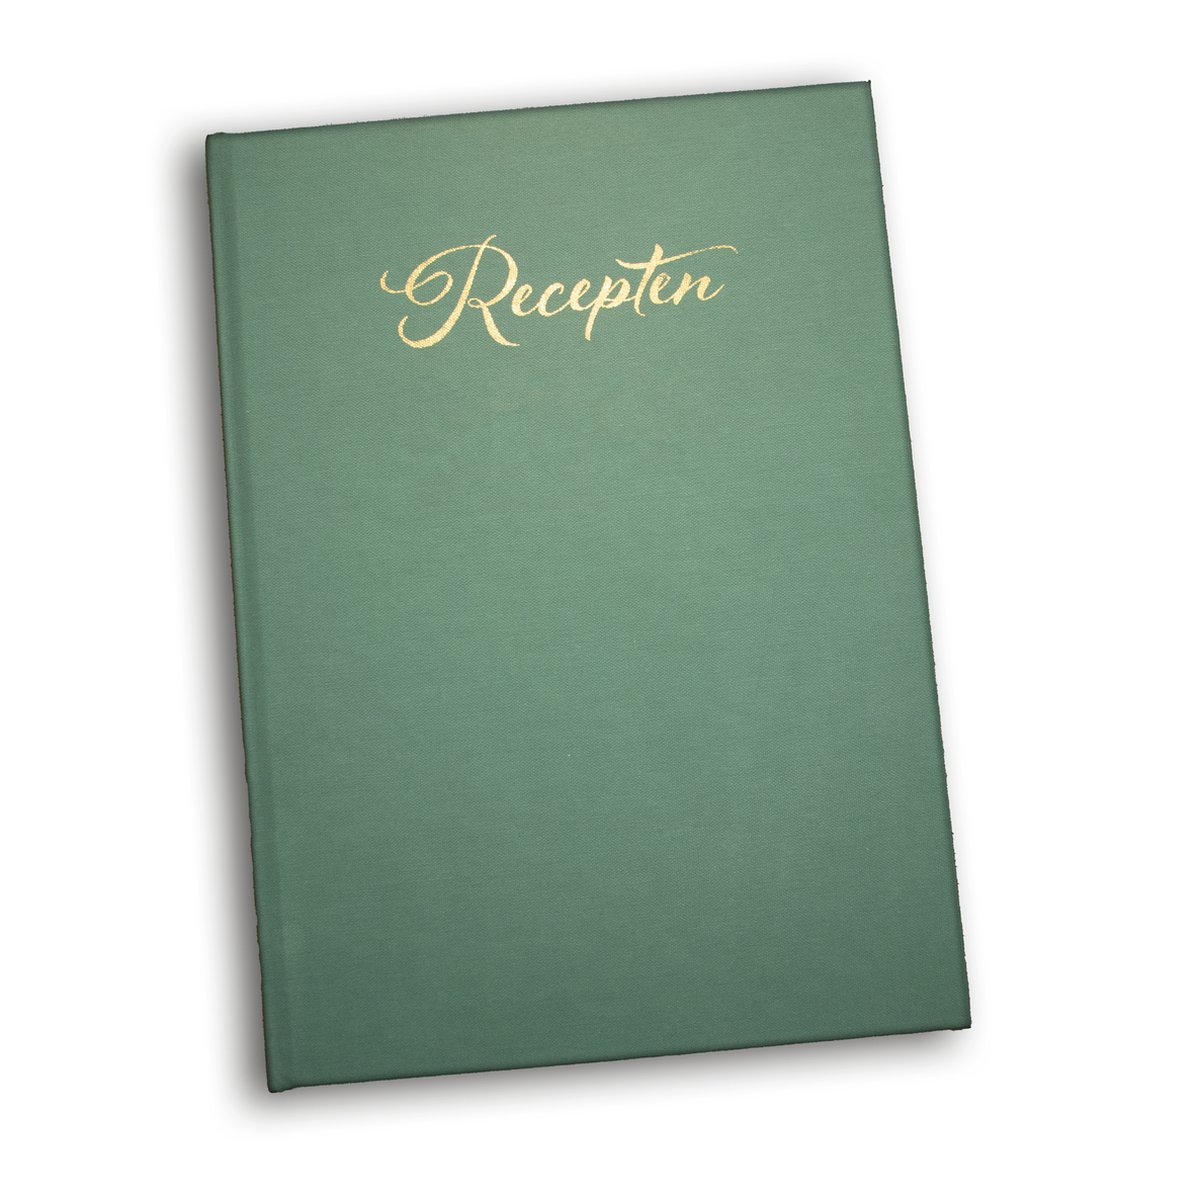 Receptenboek invulboek – Receptenboek zelf invullen – Luxe uitvoering met gouden titel op het groene omslag